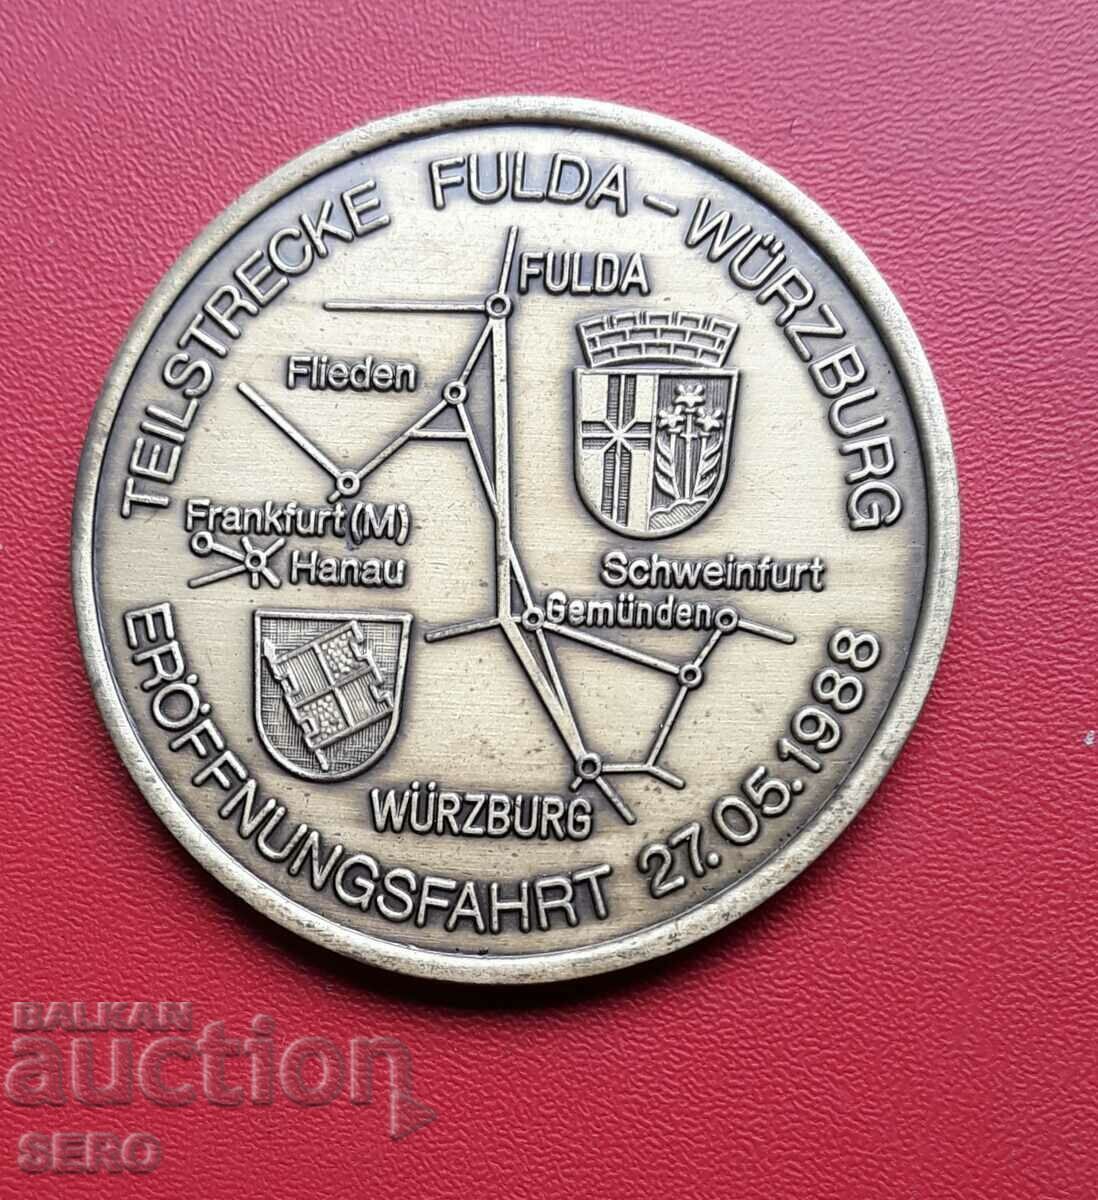 Γερμανία-μετάλλιο 1986-κατασκευή της σιδηροδρομικής γραμμής Ανόβερο-Βίρτσμπουργκ